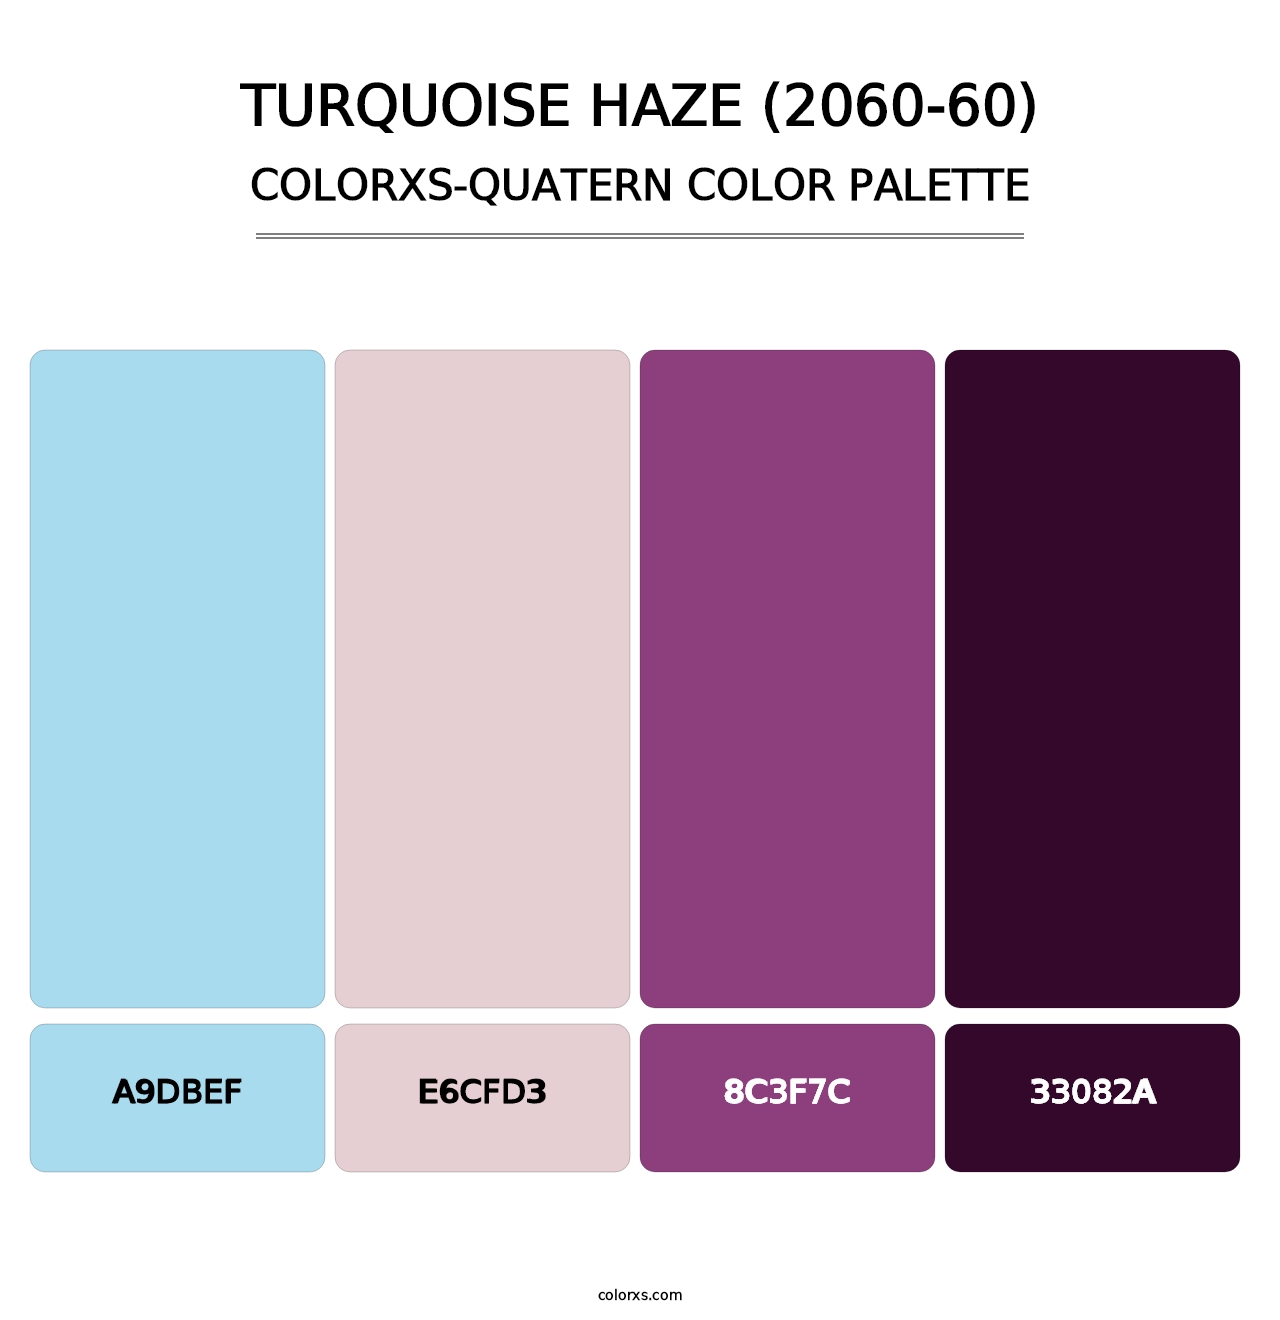 Turquoise Haze (2060-60) - Colorxs Quatern Palette